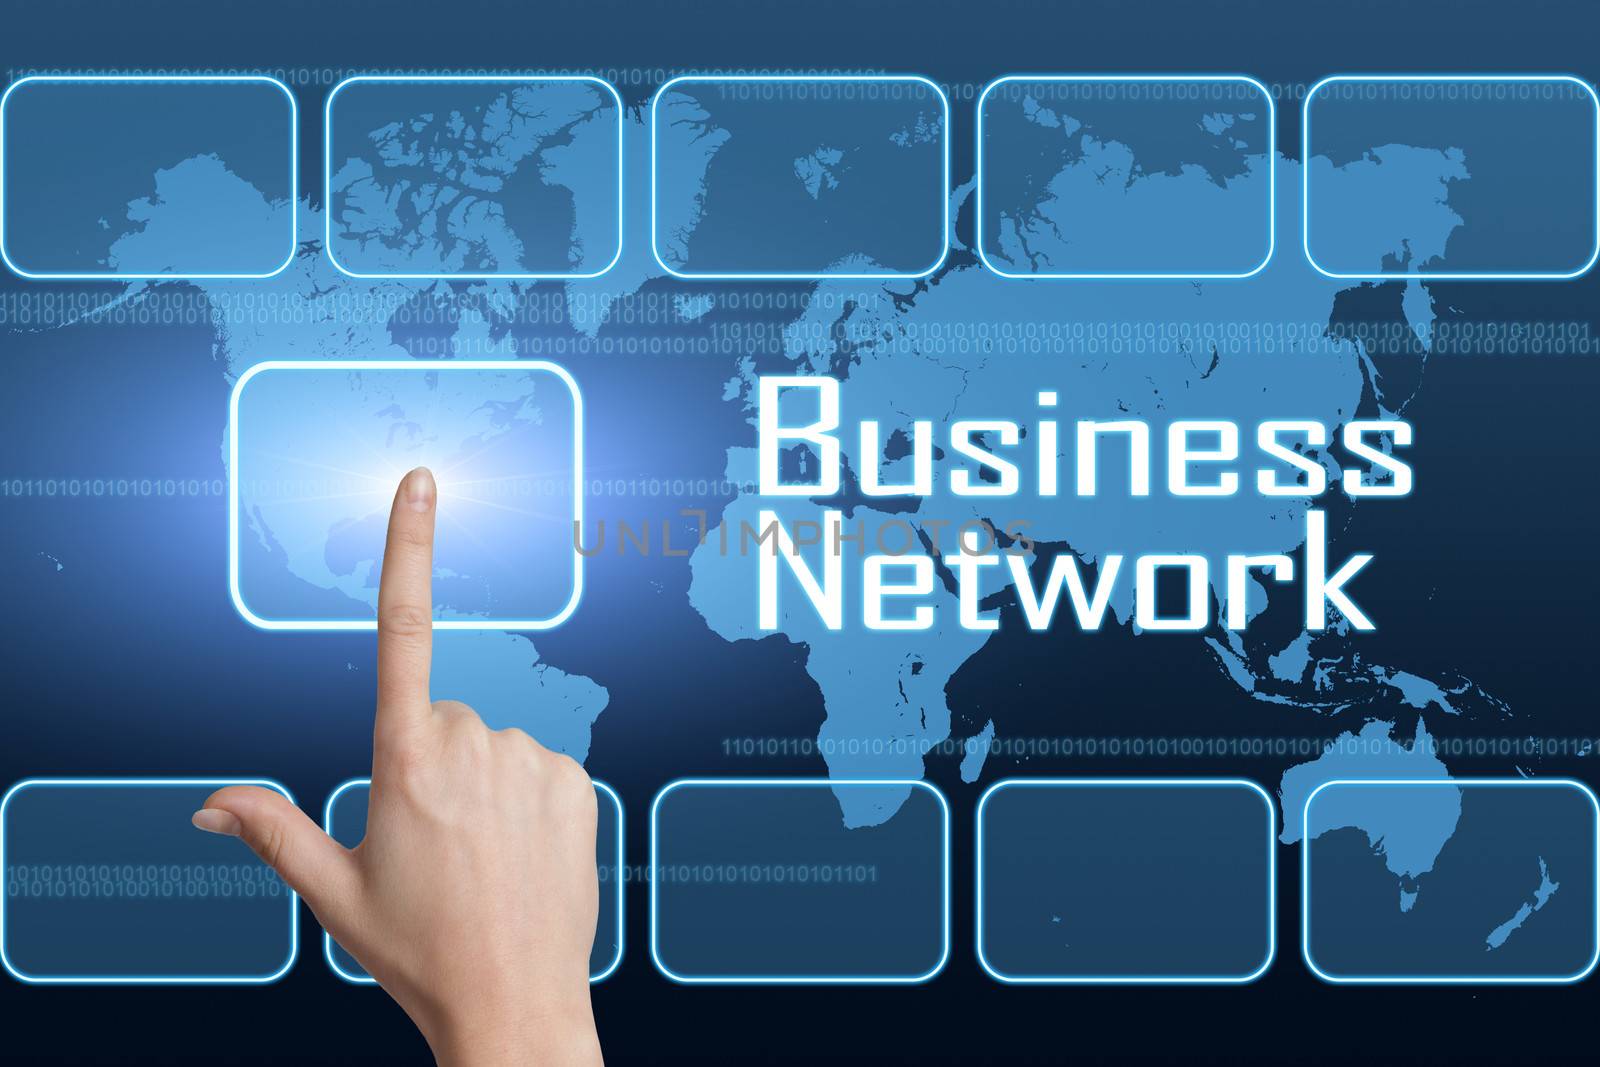 Business Network by Mazirama